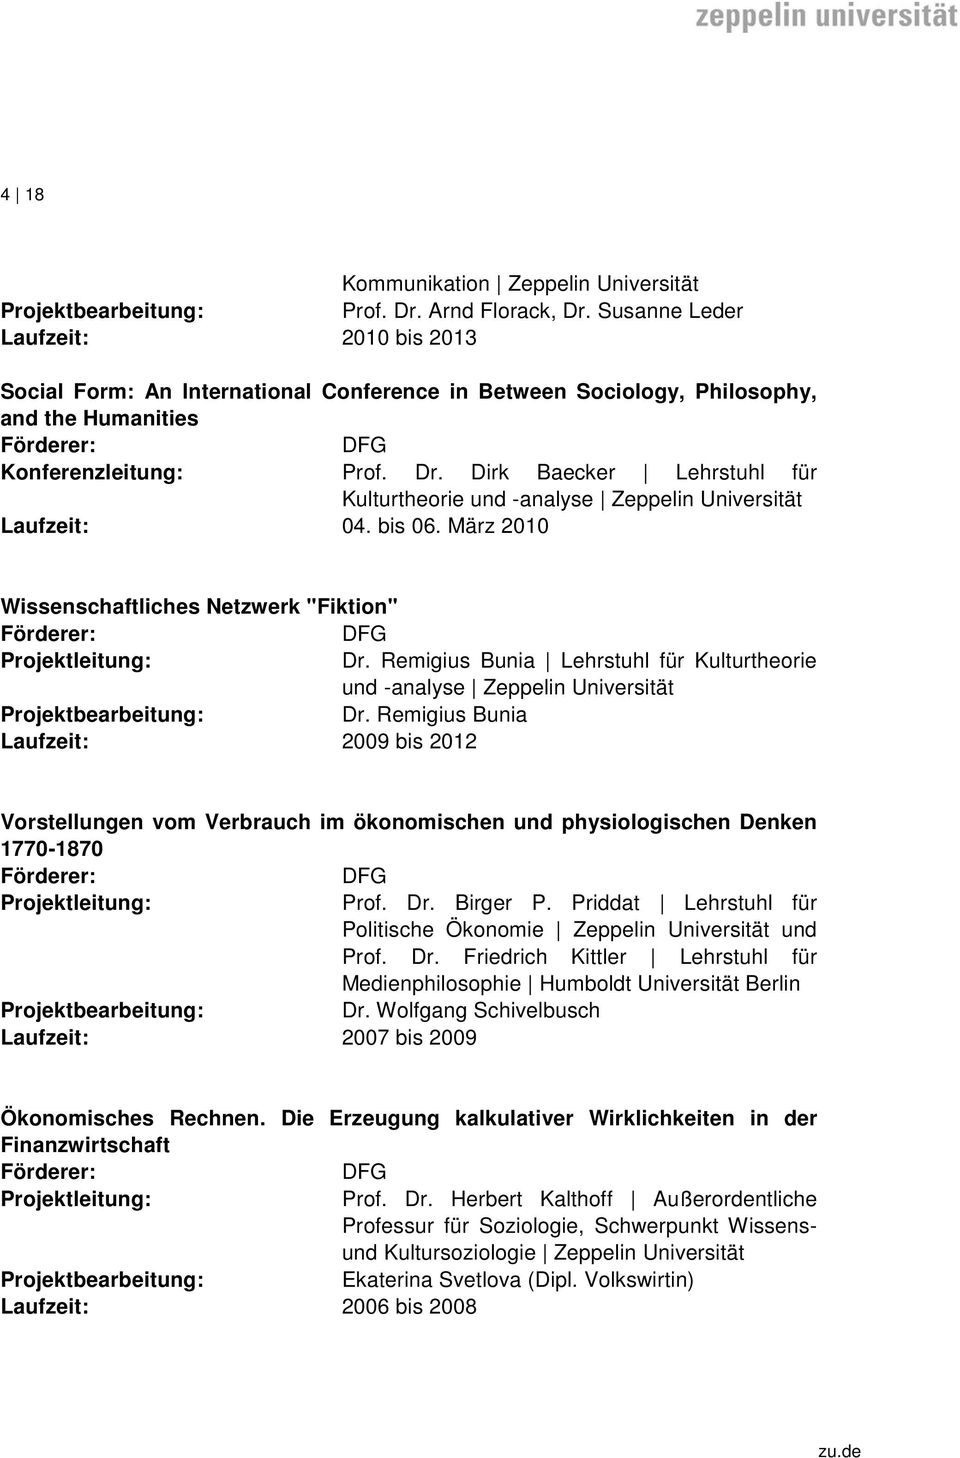 Dirk Baecker Lehrstuhl für Kulturtheorie und -analyse Laufzeit: 04. bis 06. März 2010 Wissenschaftliches Netzwerk "Fiktion" DFG Dr. Remigius Bunia Lehrstuhl für Kulturtheorie und -analyse Dr.